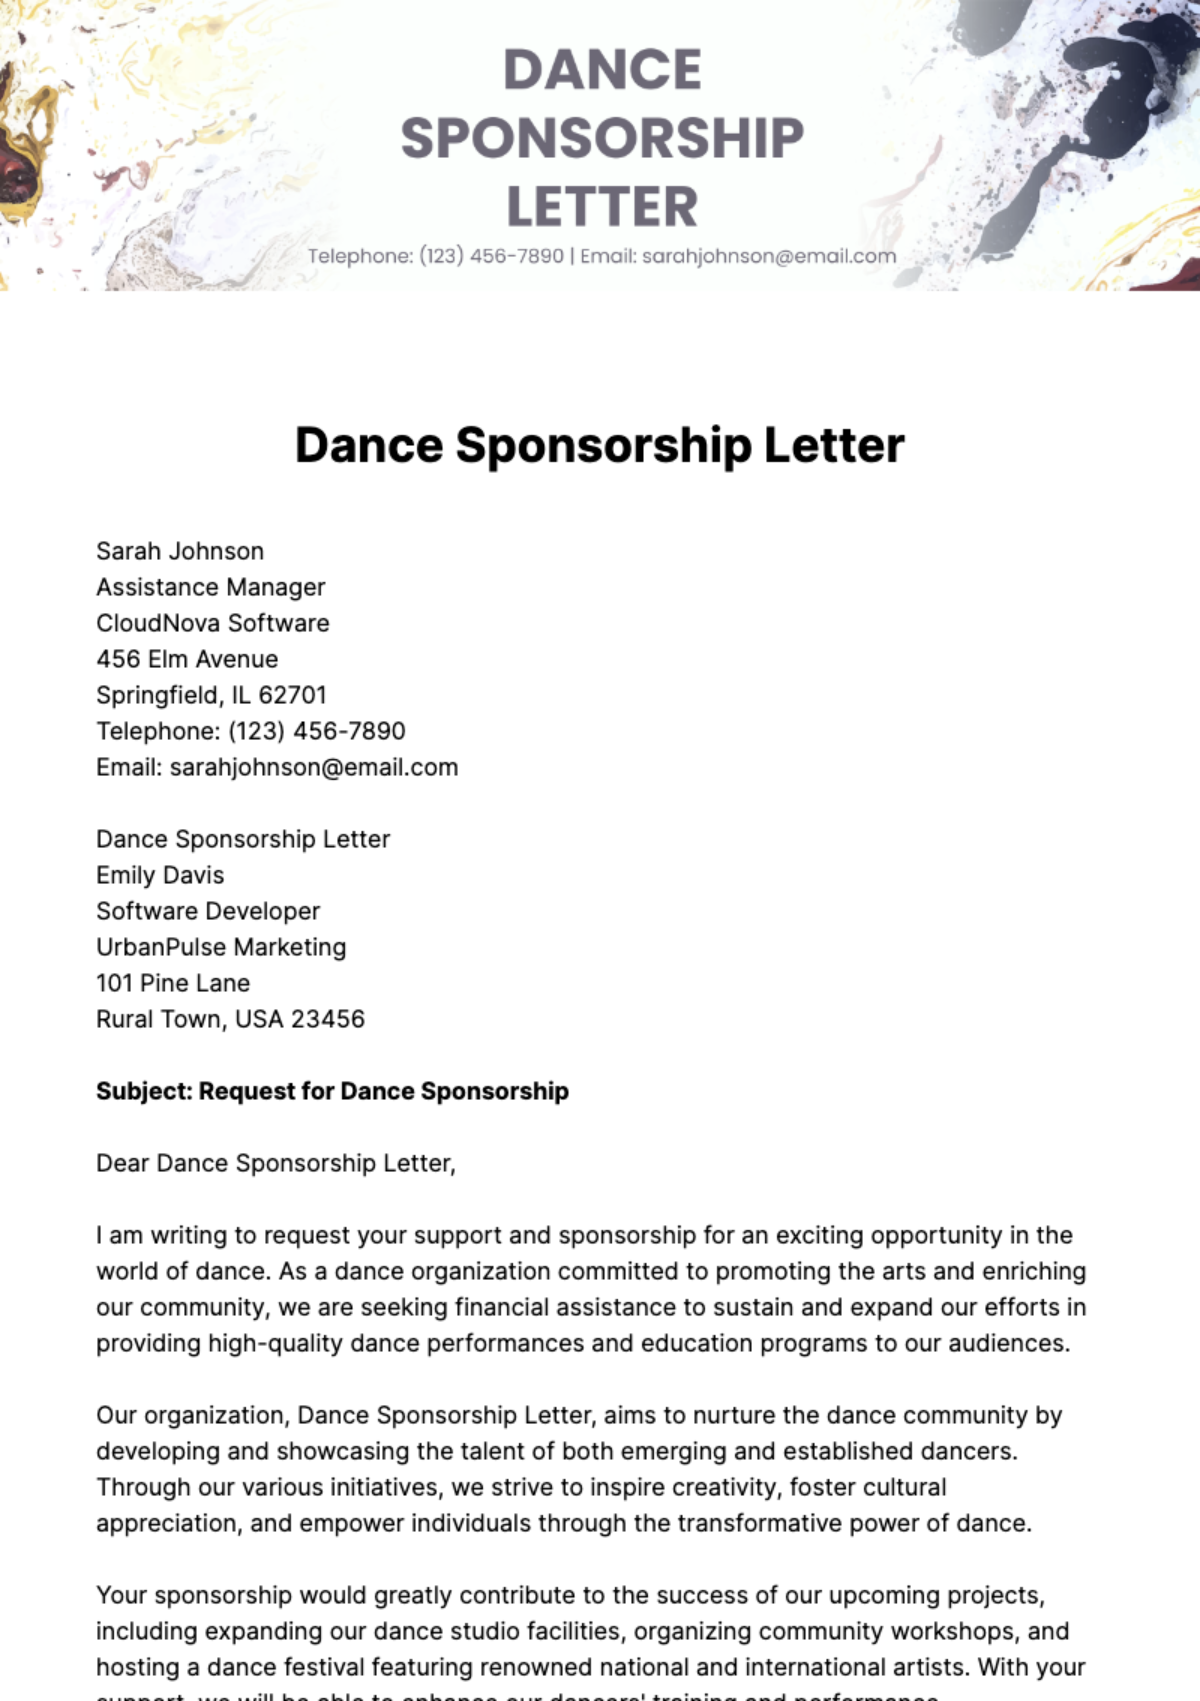 Free Dance Sponsorship Letter Template